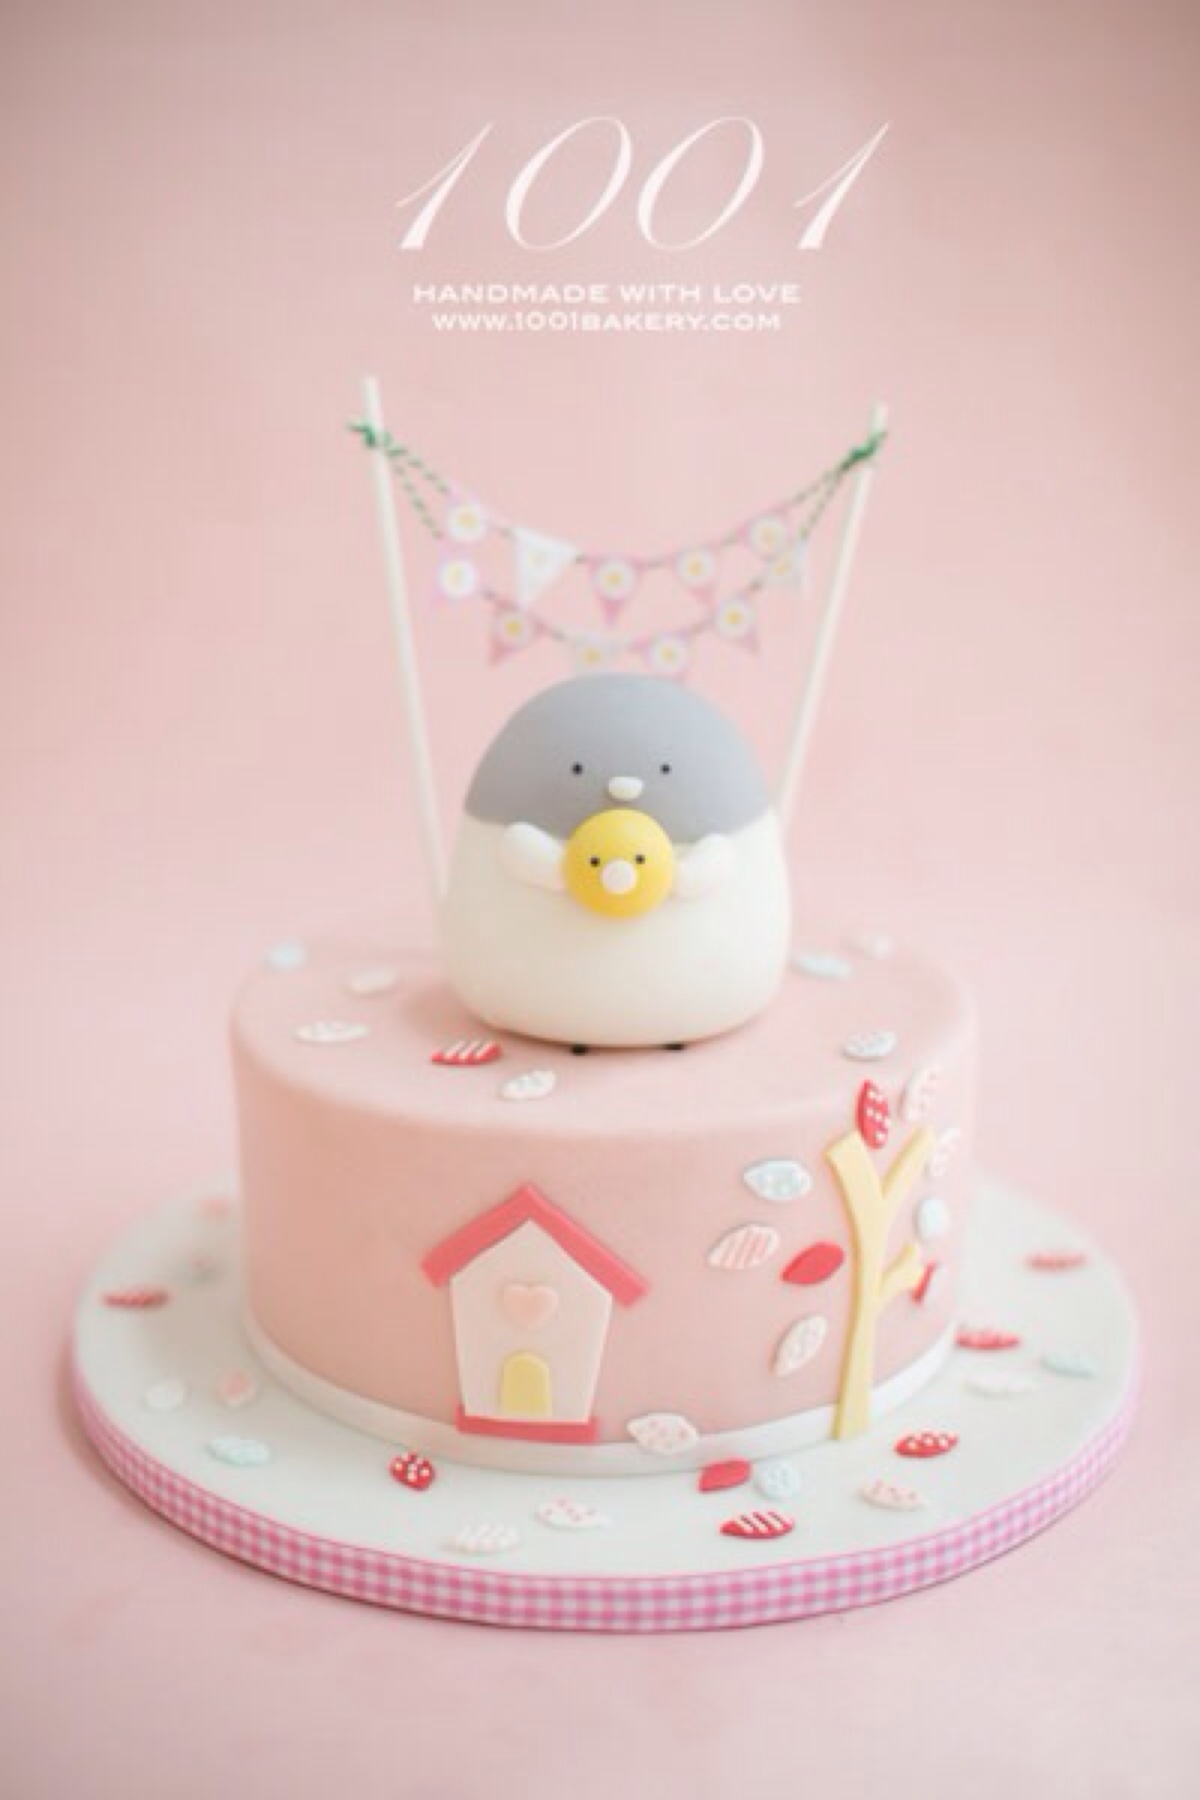 米帝欧-北京市同城配送翻糖生日蛋糕免费速递定做儿童周岁小王子